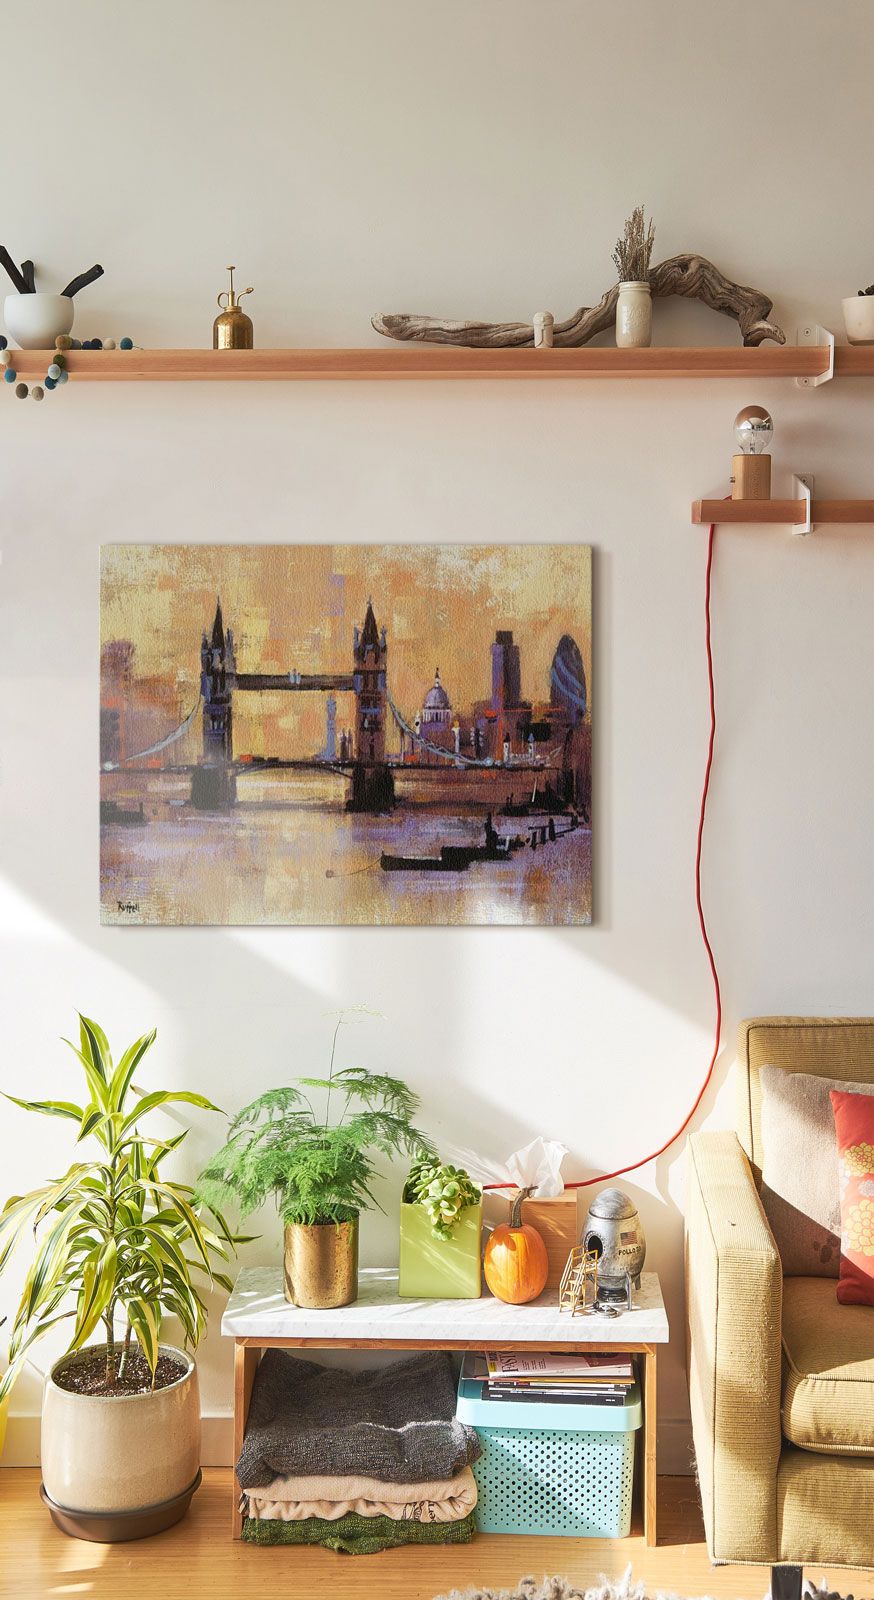 Obraz na płótnie powieszony na białej ścianie nad szafką z kwiatami w doniczce przedstawiający Tower Bridge w Londynie